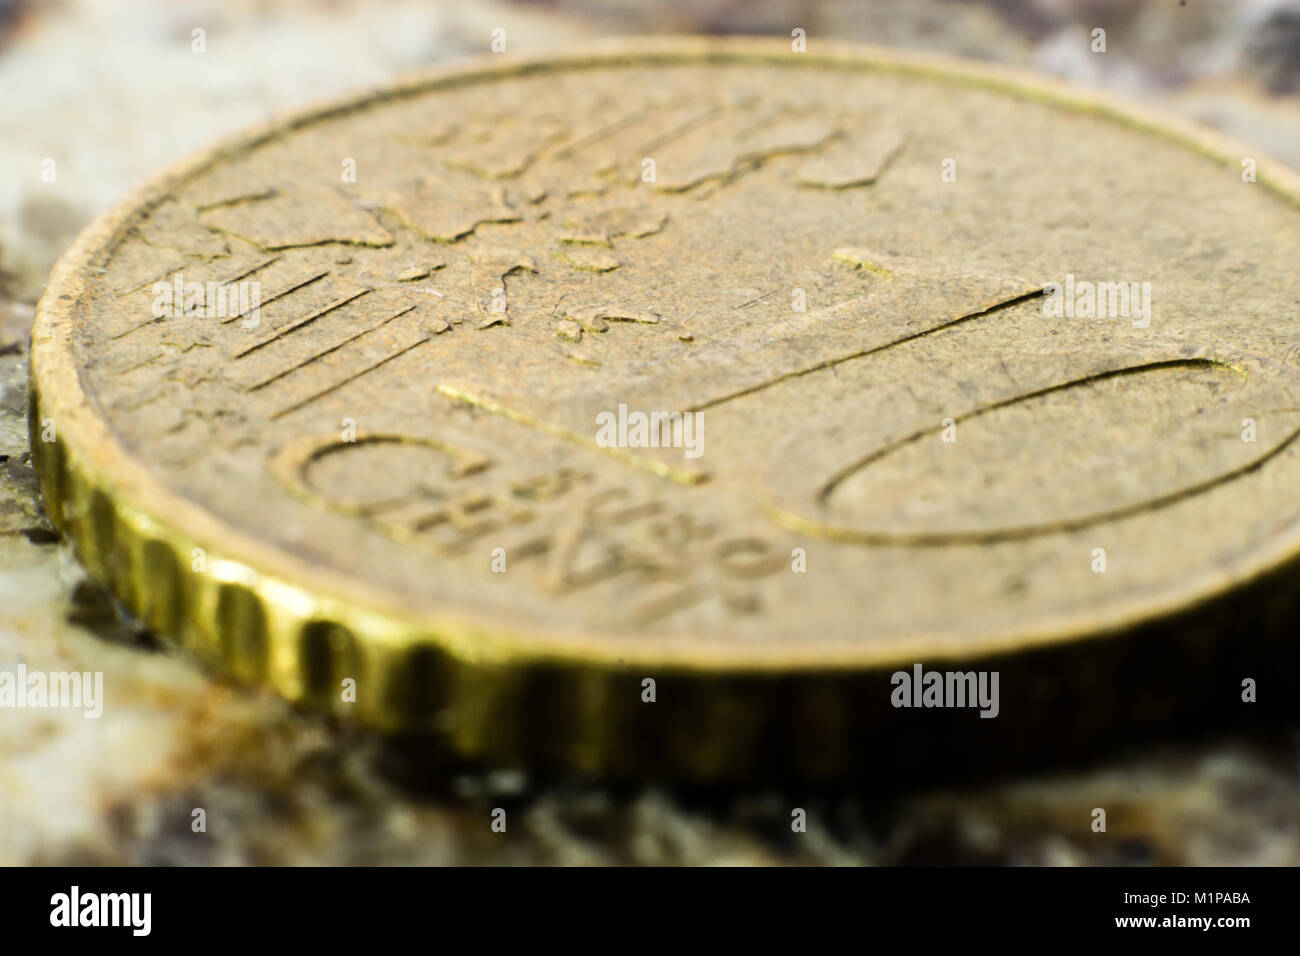 Macro of a 10 Euro cent coin Stock Photo